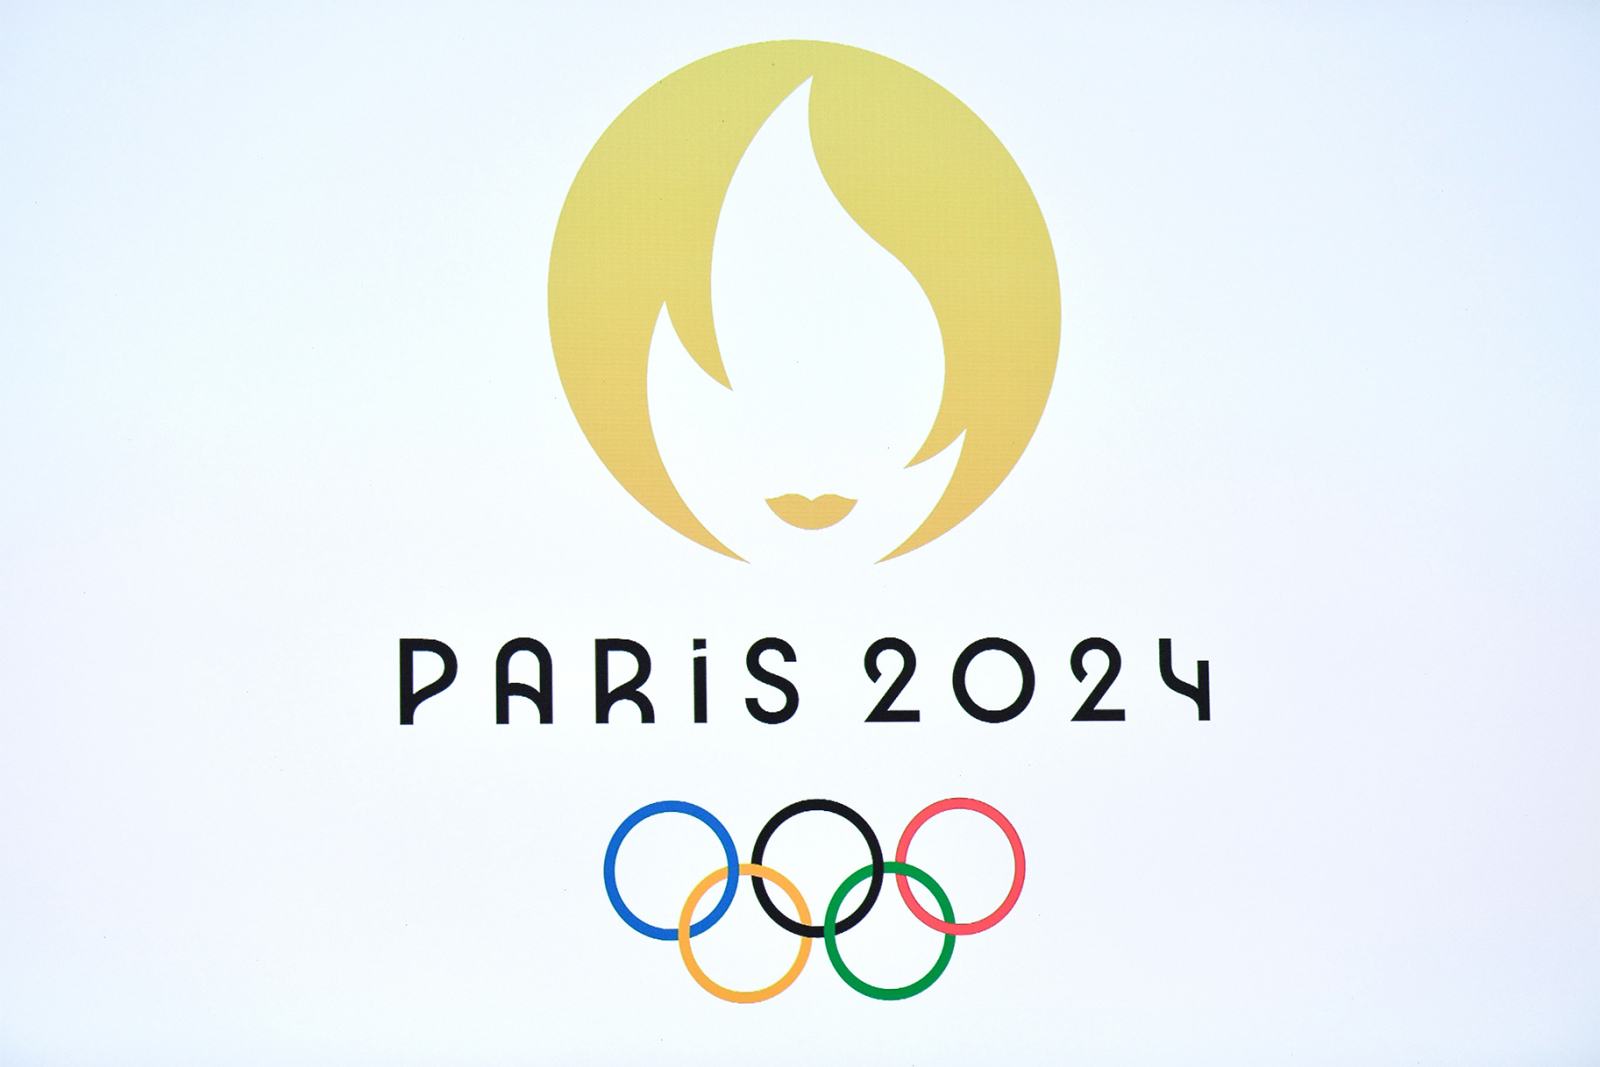 Олимпийские игры 2024